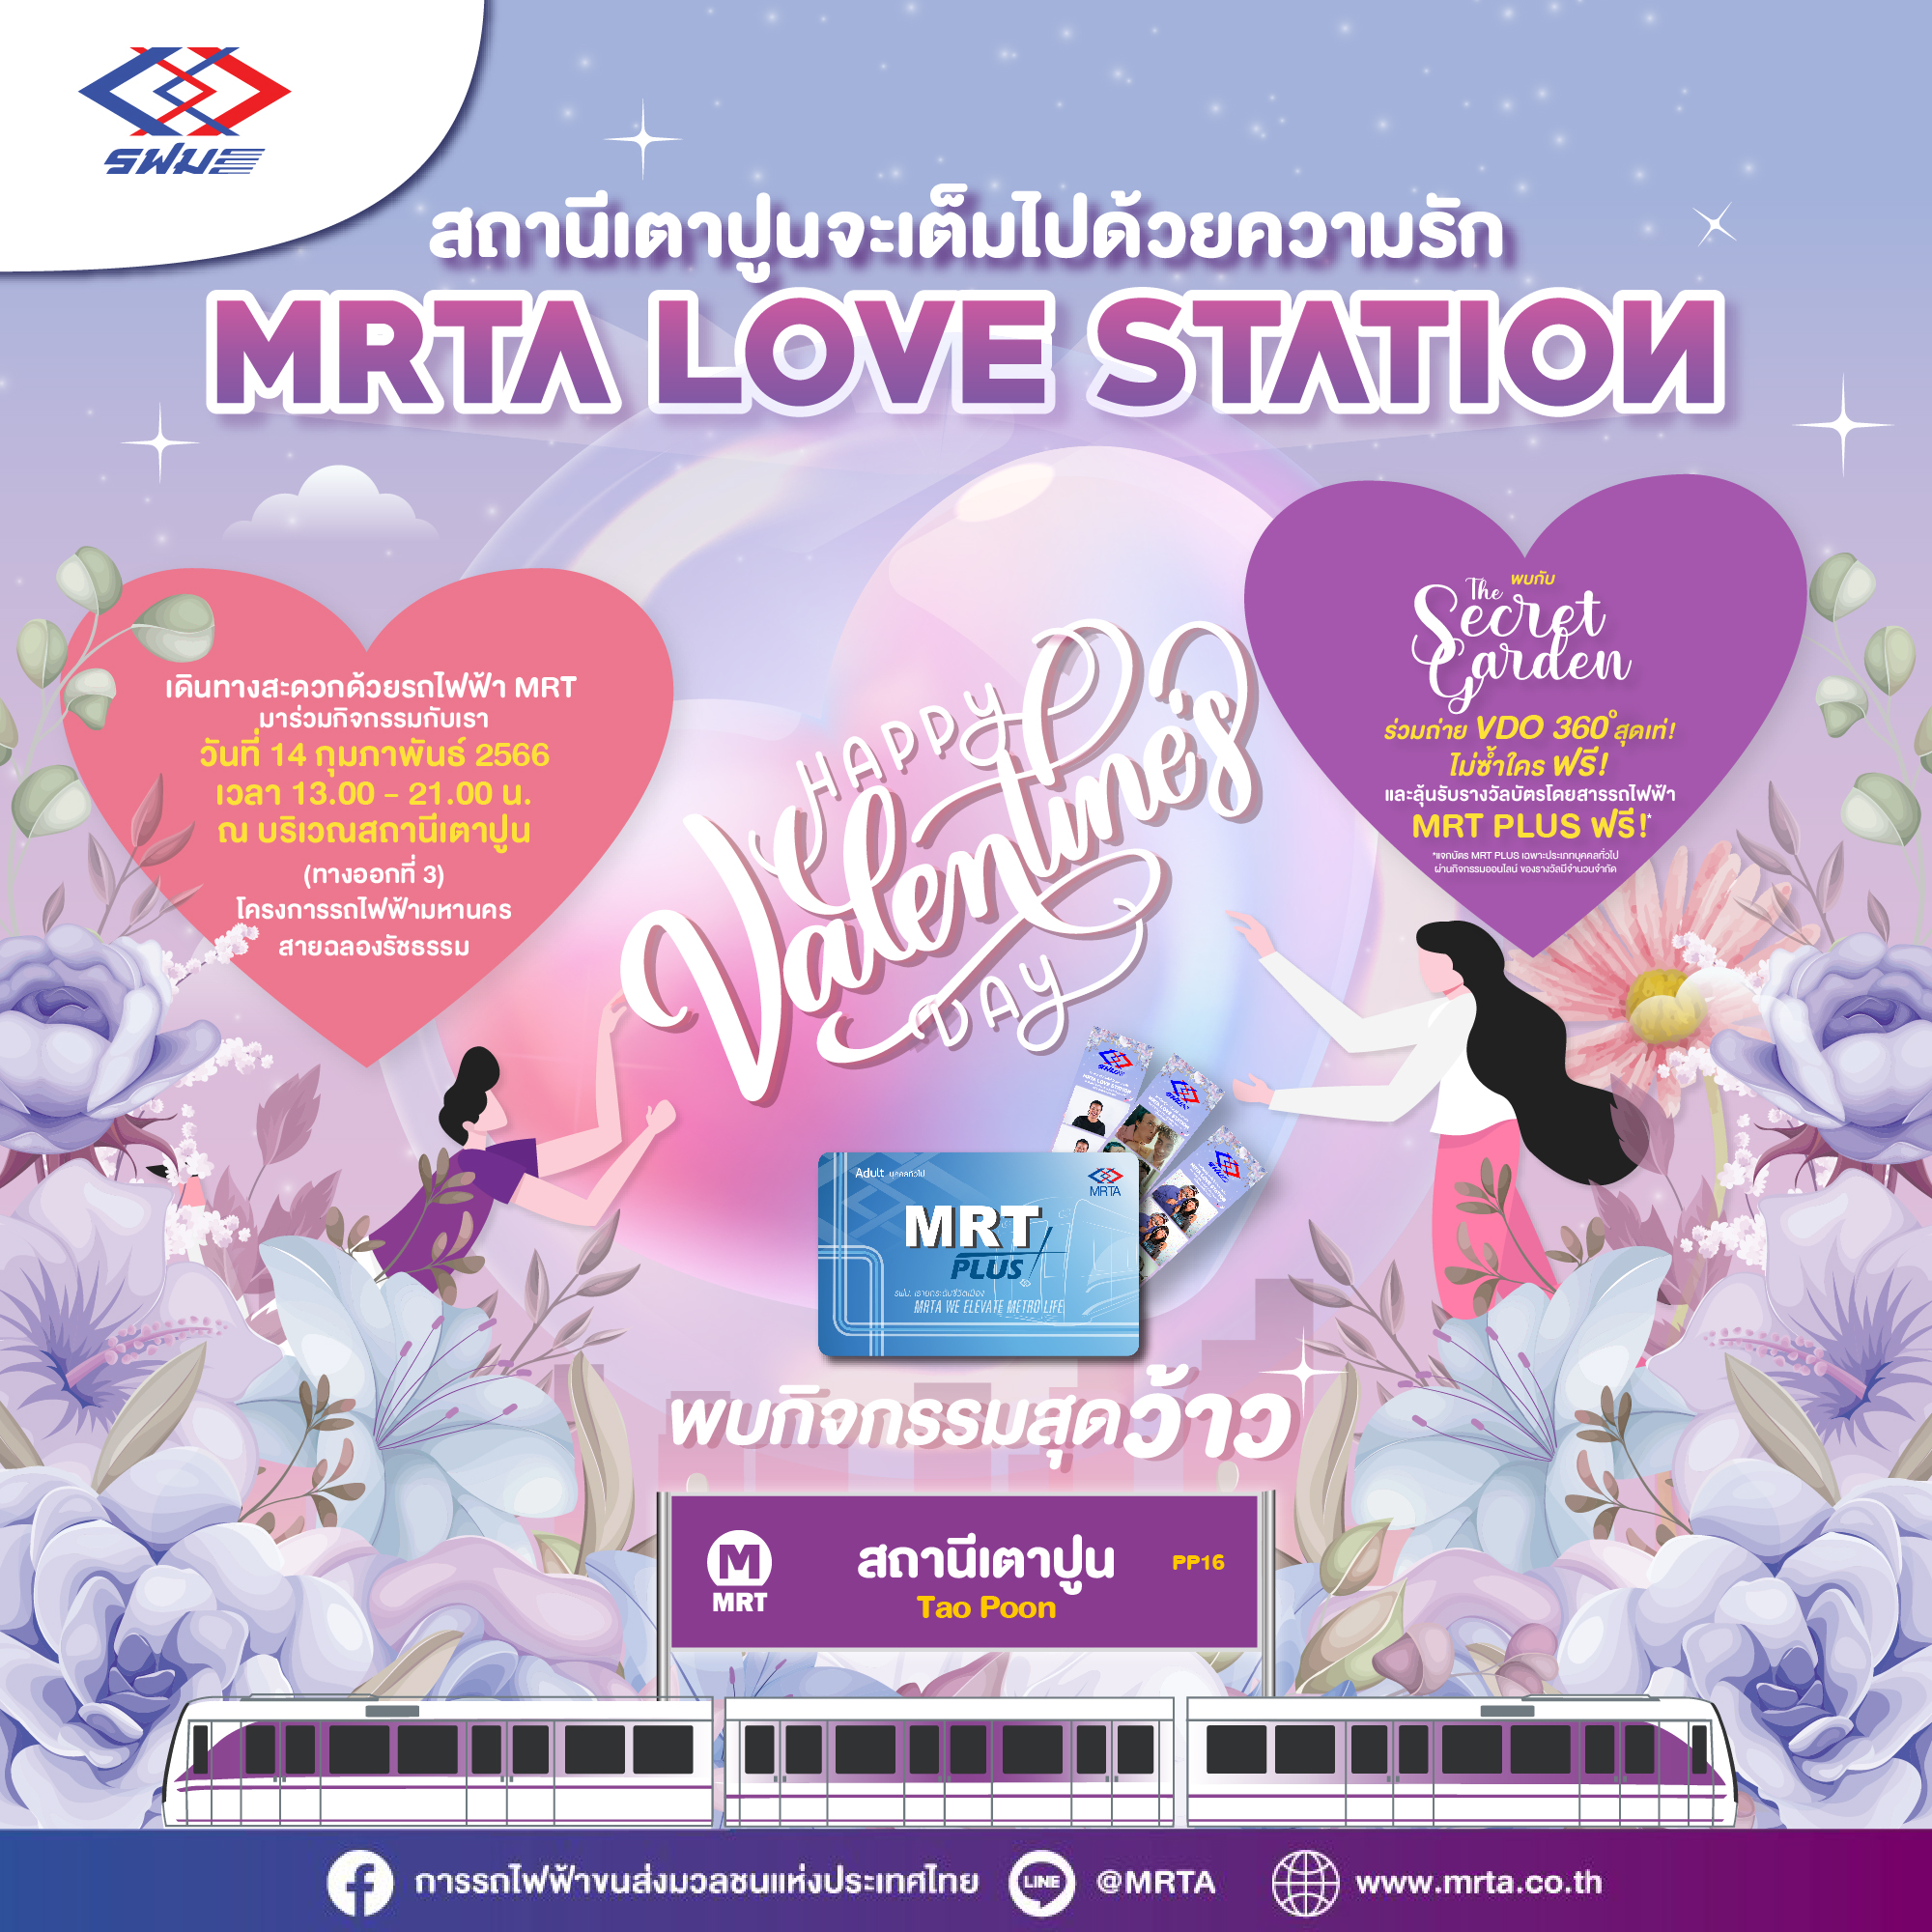 รฟม. จัดกิจกรรม MRTA Love Station ชวนประชาชน ผู้ใช้บริการรถไฟฟ้า MRT เติมความหวาน พร้อมลุ้นรับบัตรโดยสารรถไฟฟ้า MRT Plus มูลค่าเดินทาง 200 บาท ฟรี